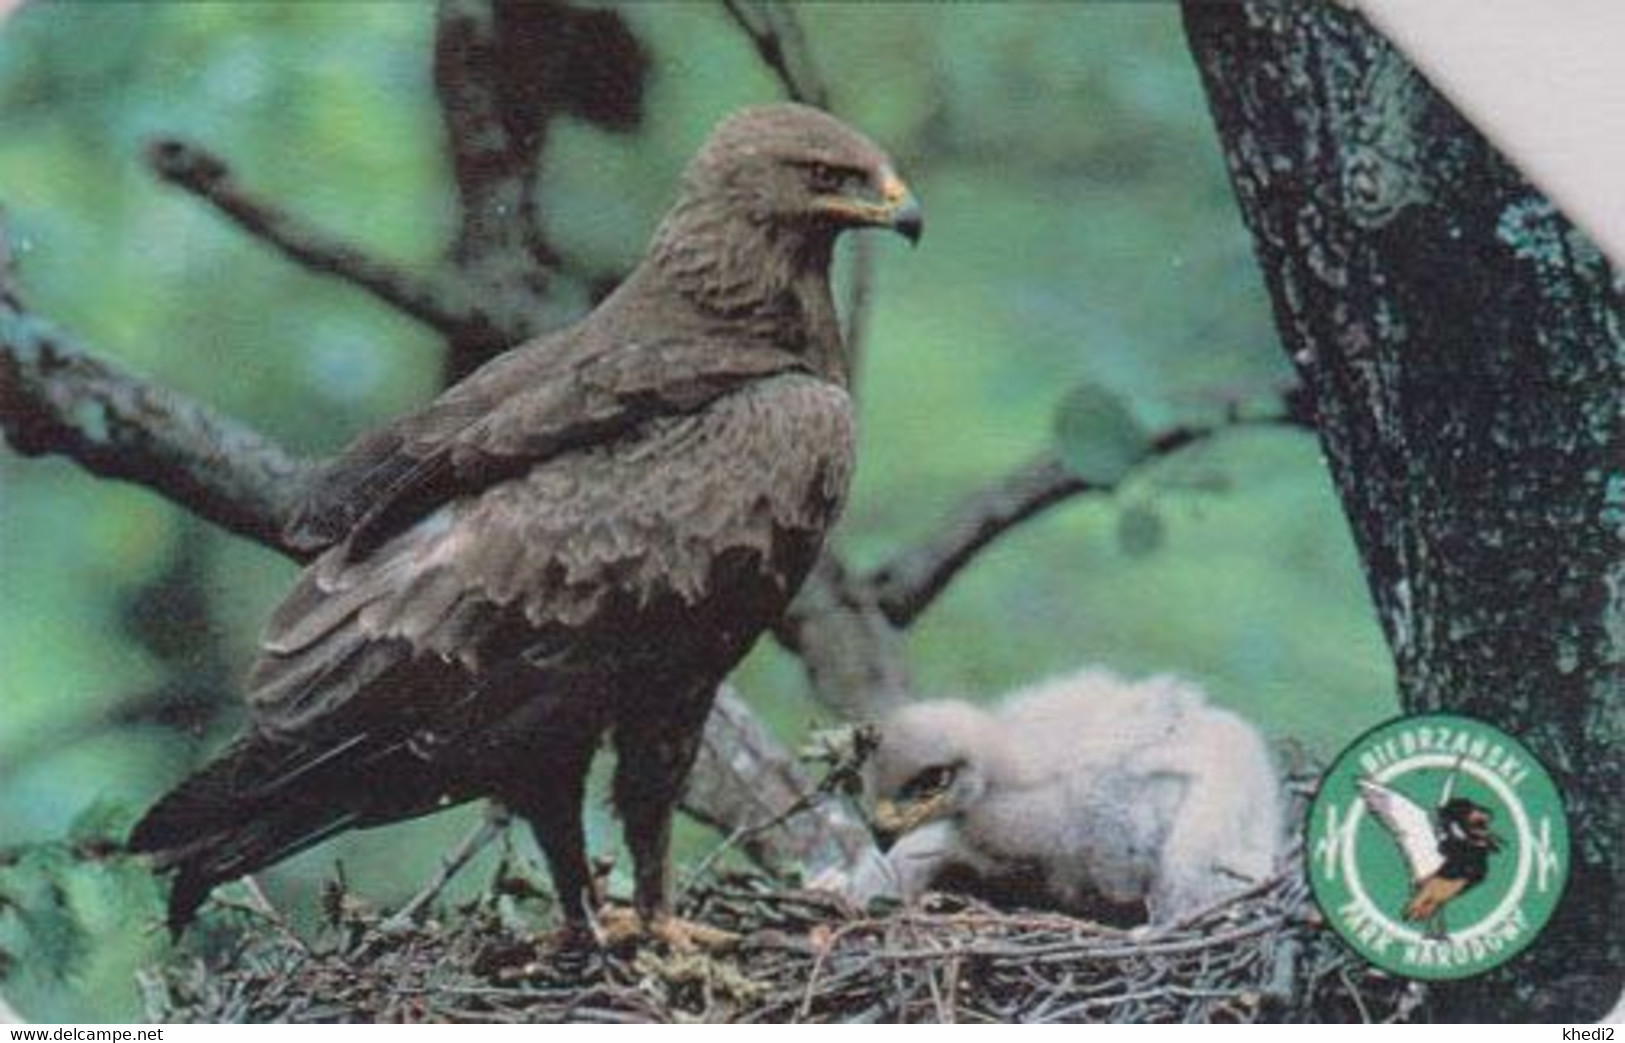 TC POLOGNE - ANIMAL / Série Bierbrzanski Park 4/10 - OISEAU AIGLE POMARIN Au Nid - EAGLE BIRD POLAND Phonecard - BE 5525 - Águilas & Aves De Presa